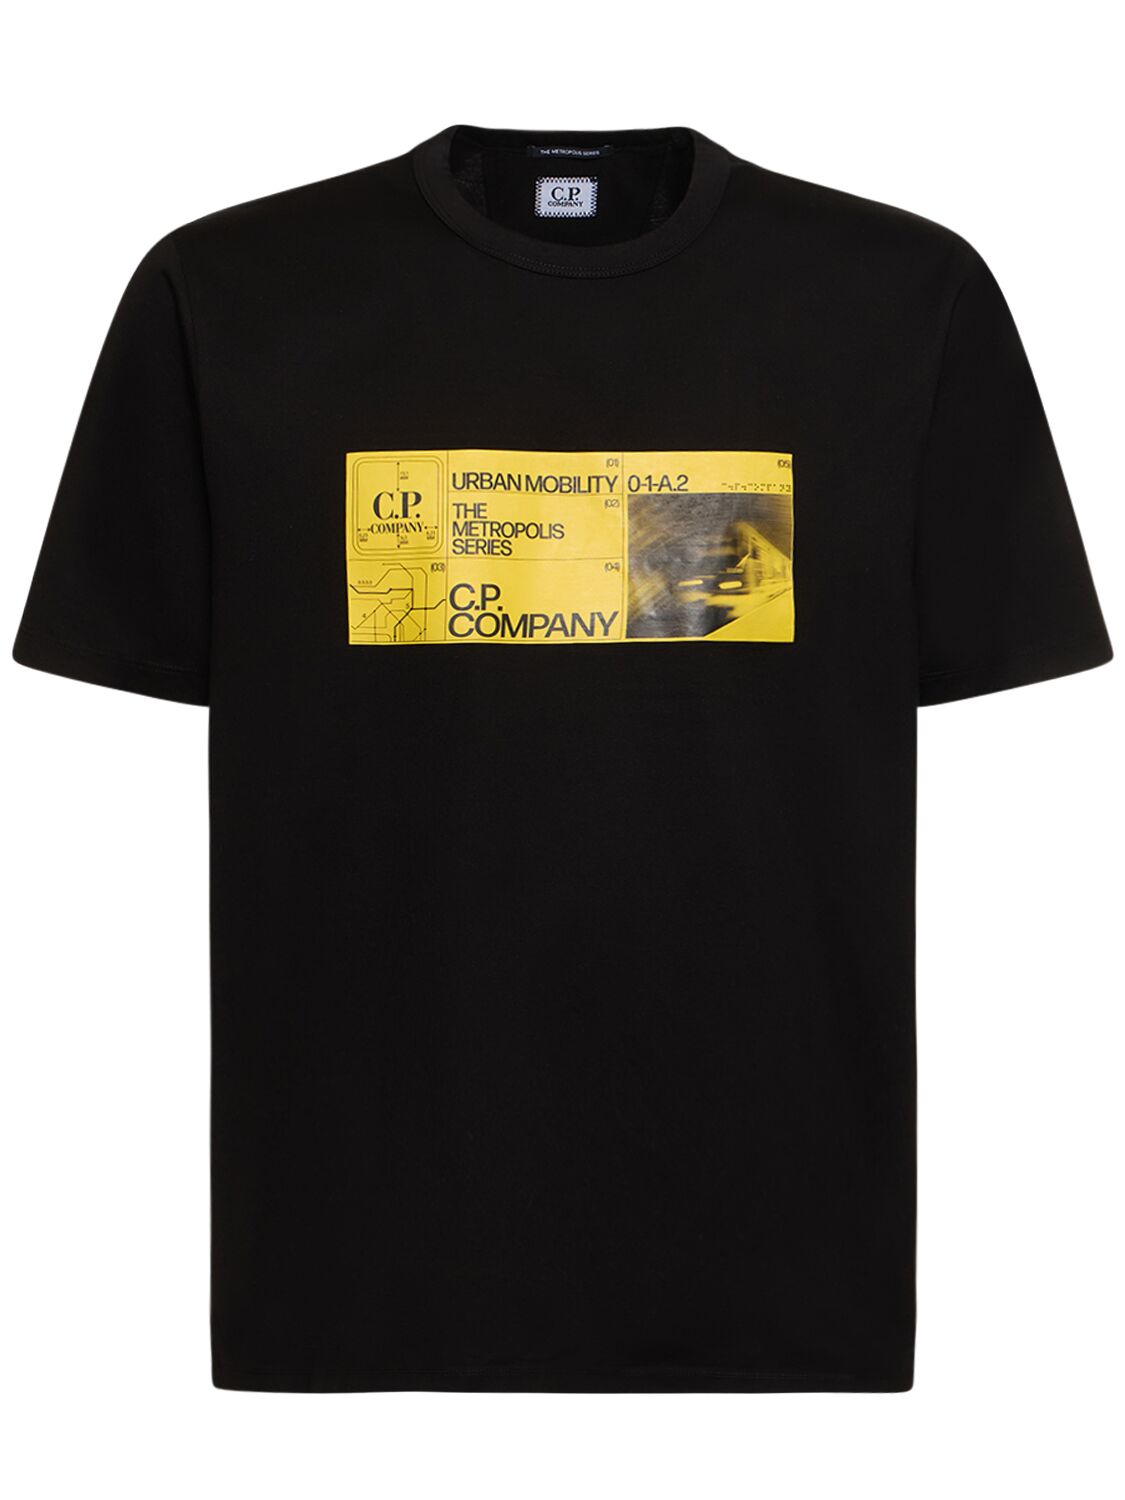 Image of Metropolis Series T-shirt